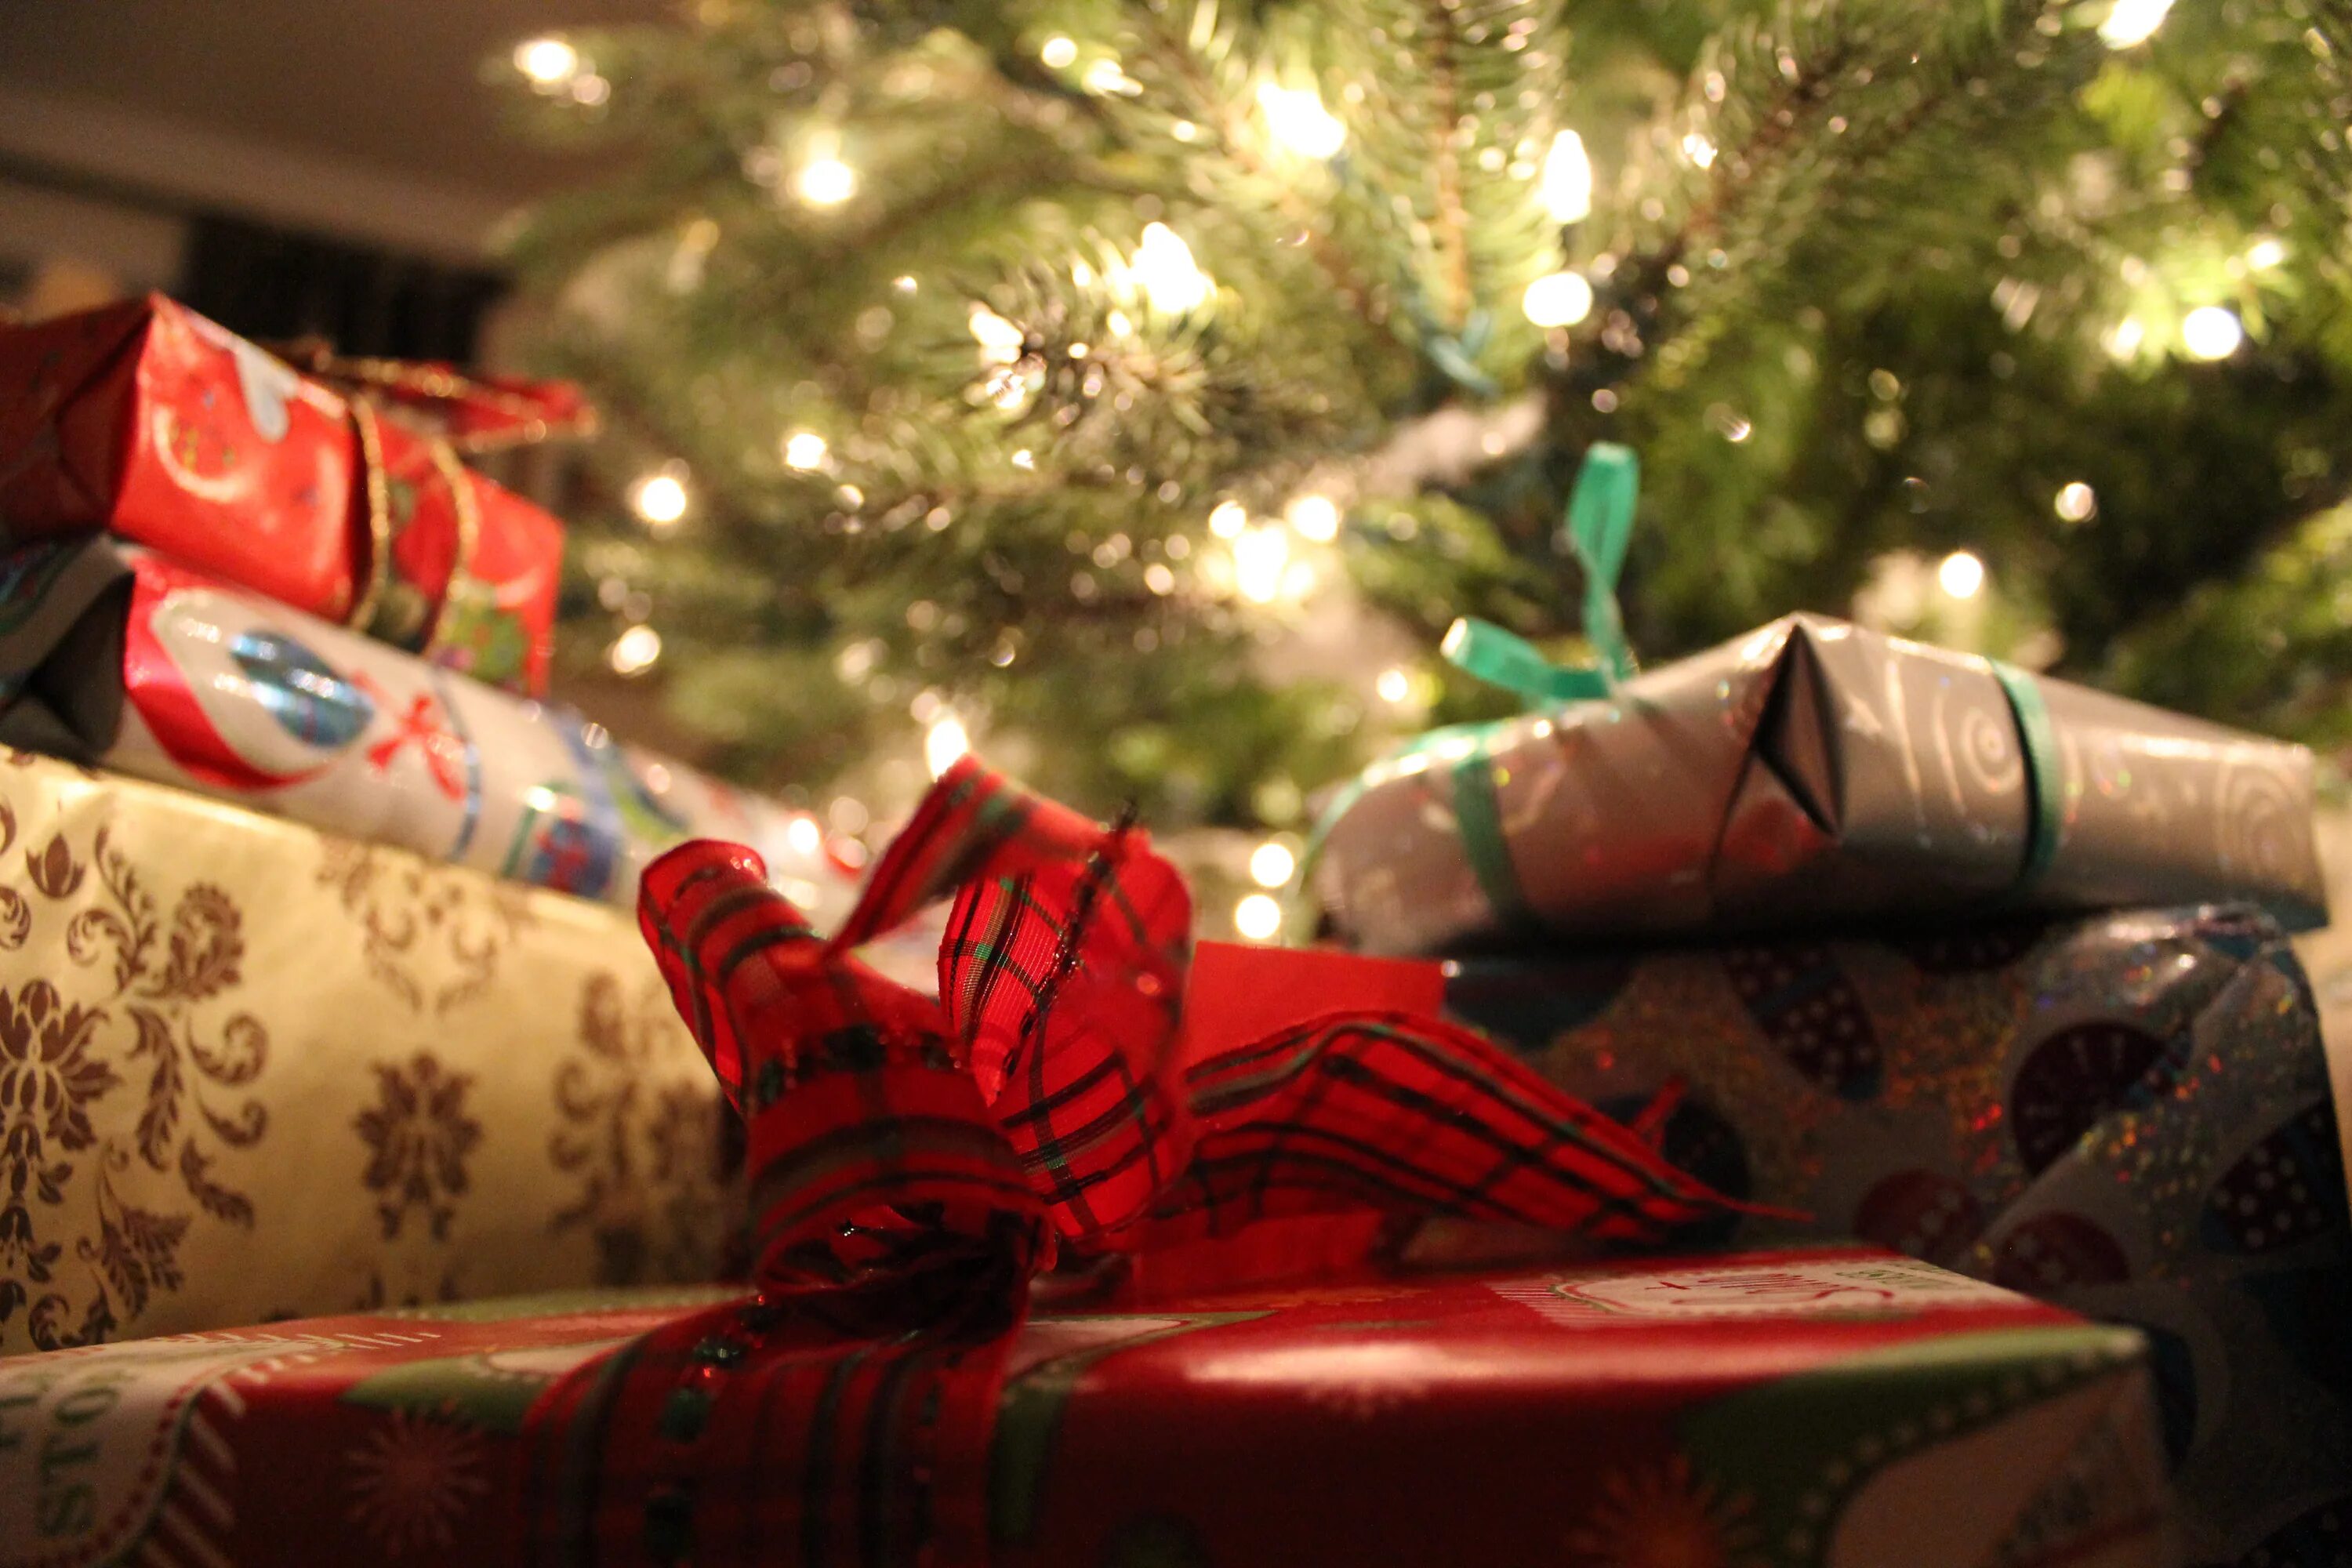 Работает ли в новый год. Подарки под ёлкой. Мешок под елкой. Мешок новогодний под елкой. Подарки под елкой США.